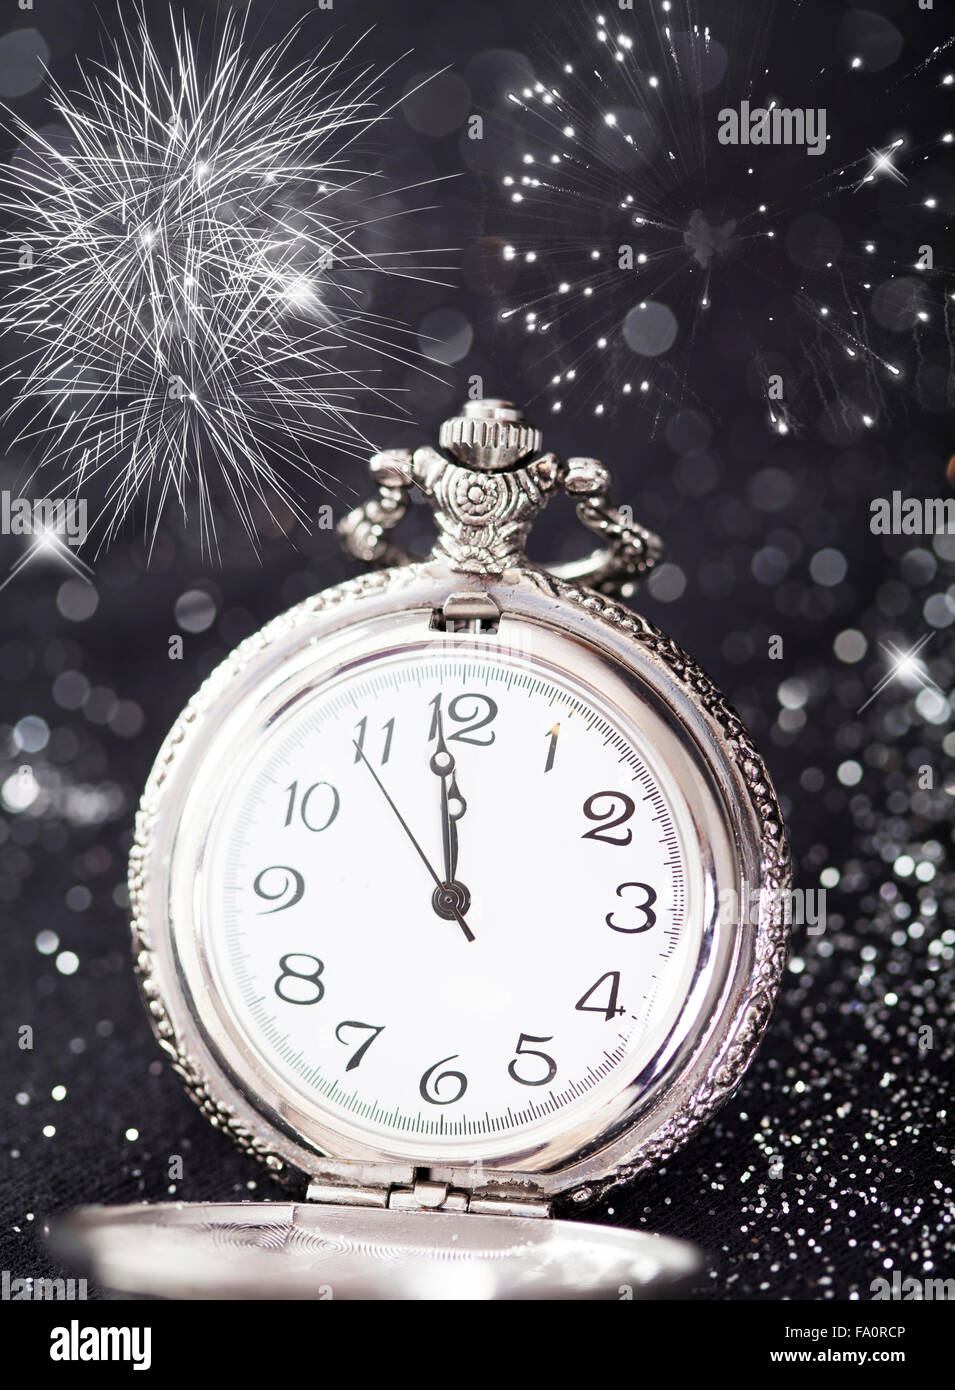 Silvester um Mitternacht - alte Uhr mit Sternen, Schneeflocken und  Weihnachtslichter Stockfotografie - Alamy